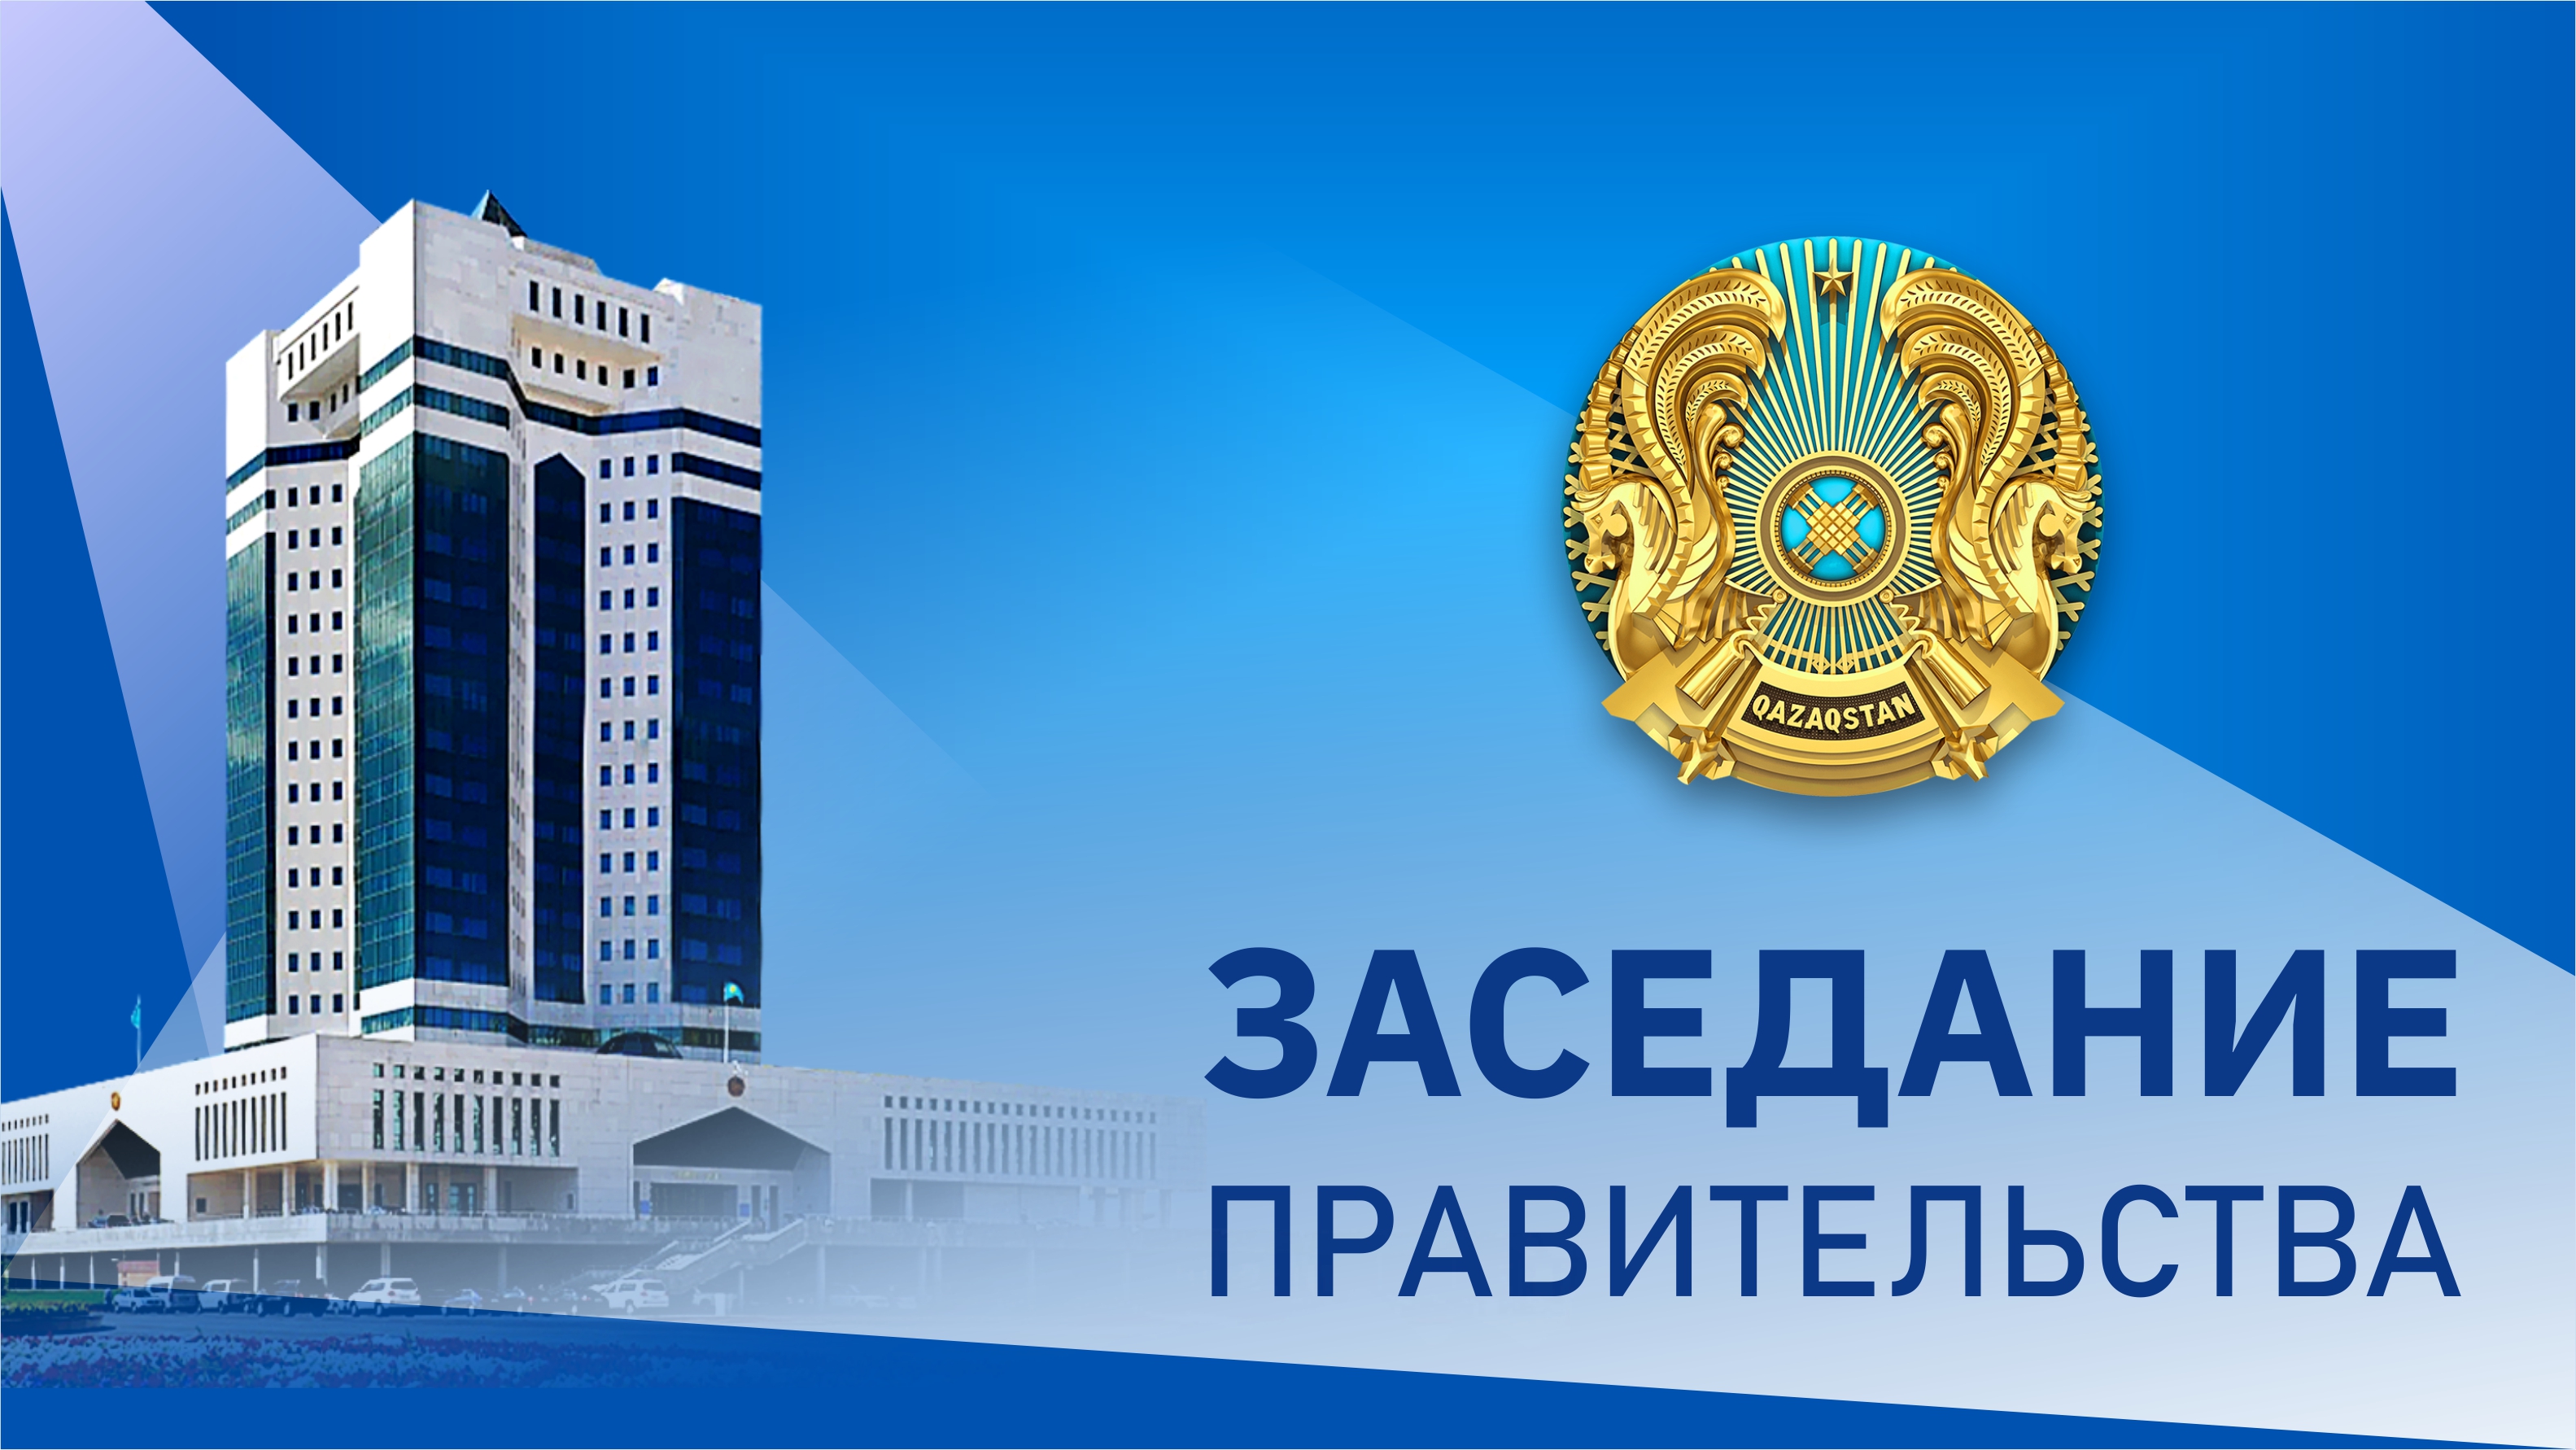 2 июня состоится заседание Правительства Казахстана